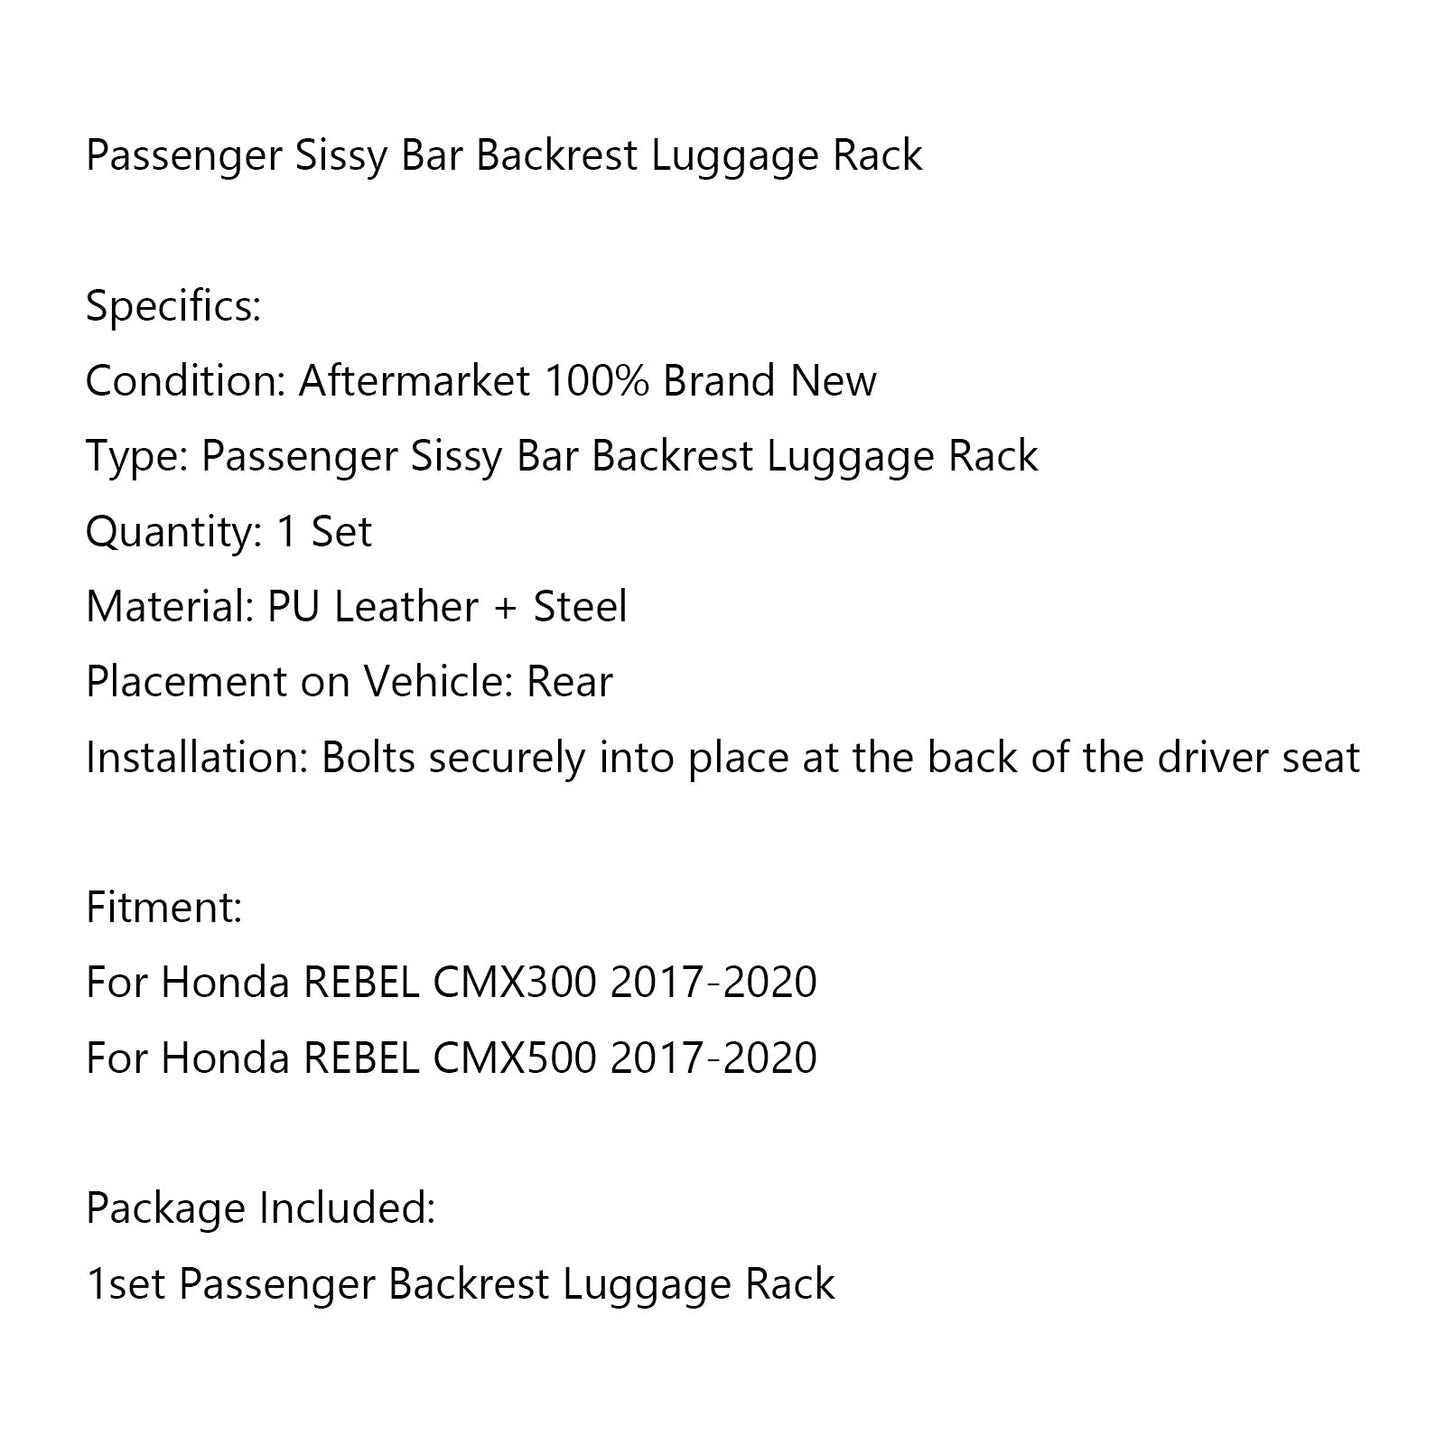 Passenger Sissy Bar Backrest Luggage Rack for Honda REBEL CMX300 CMX500 2017-20